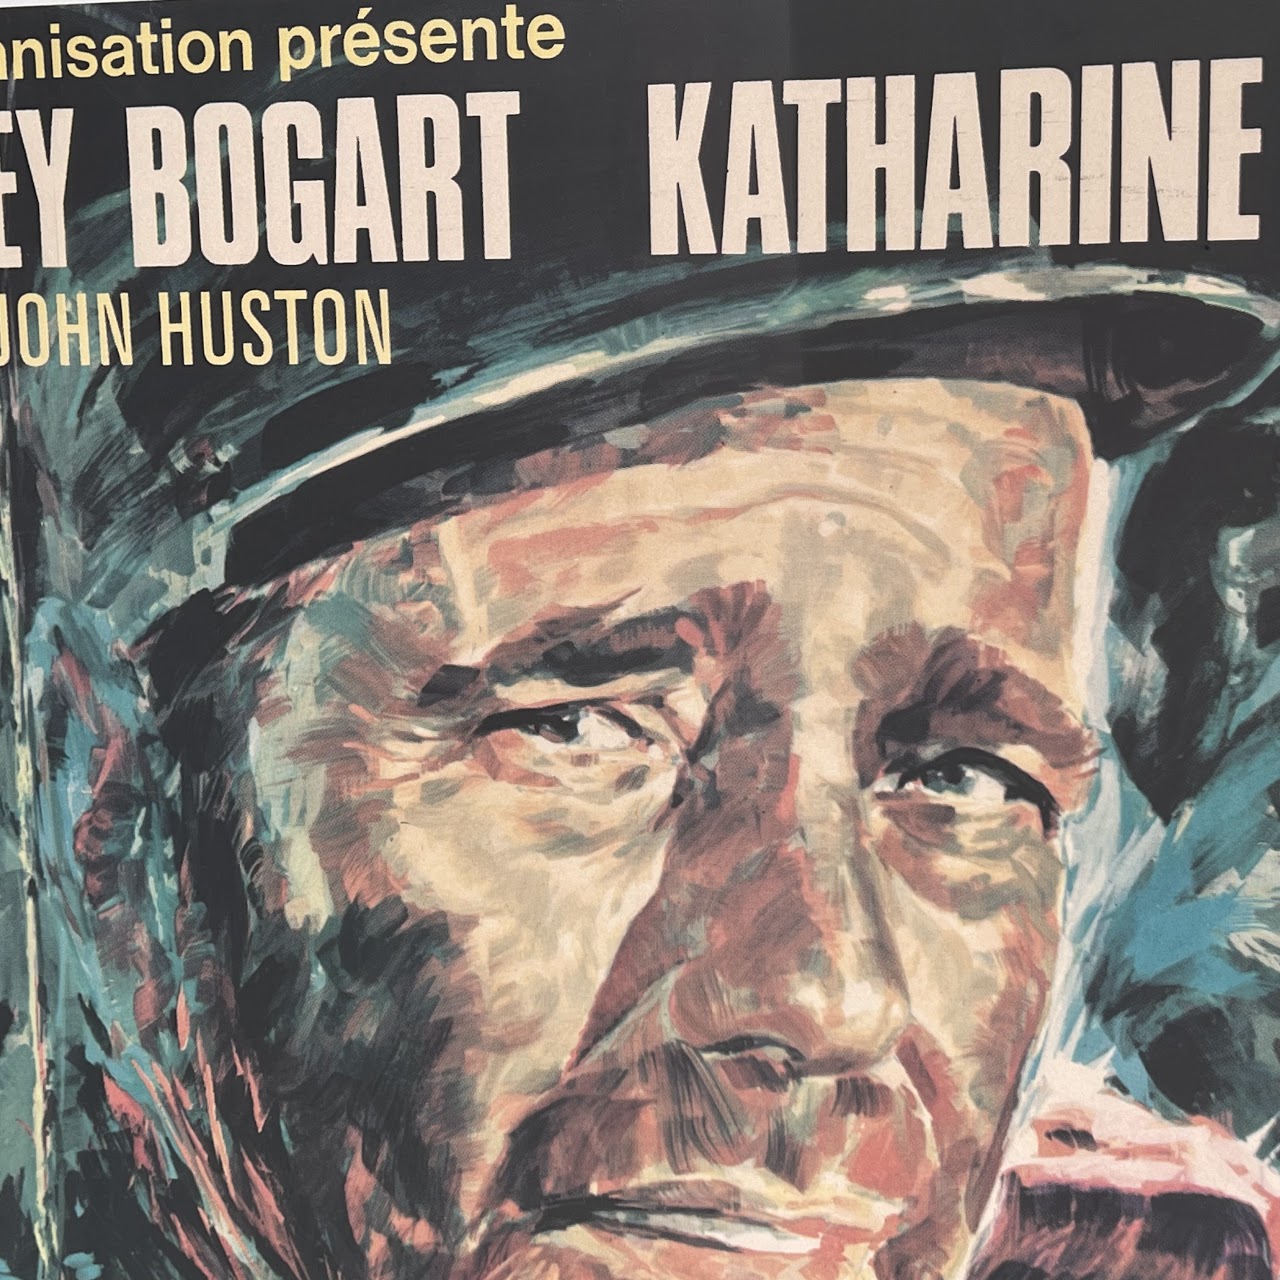 Bogart & Hepburn 'The African Queen' Original French Movie Poster